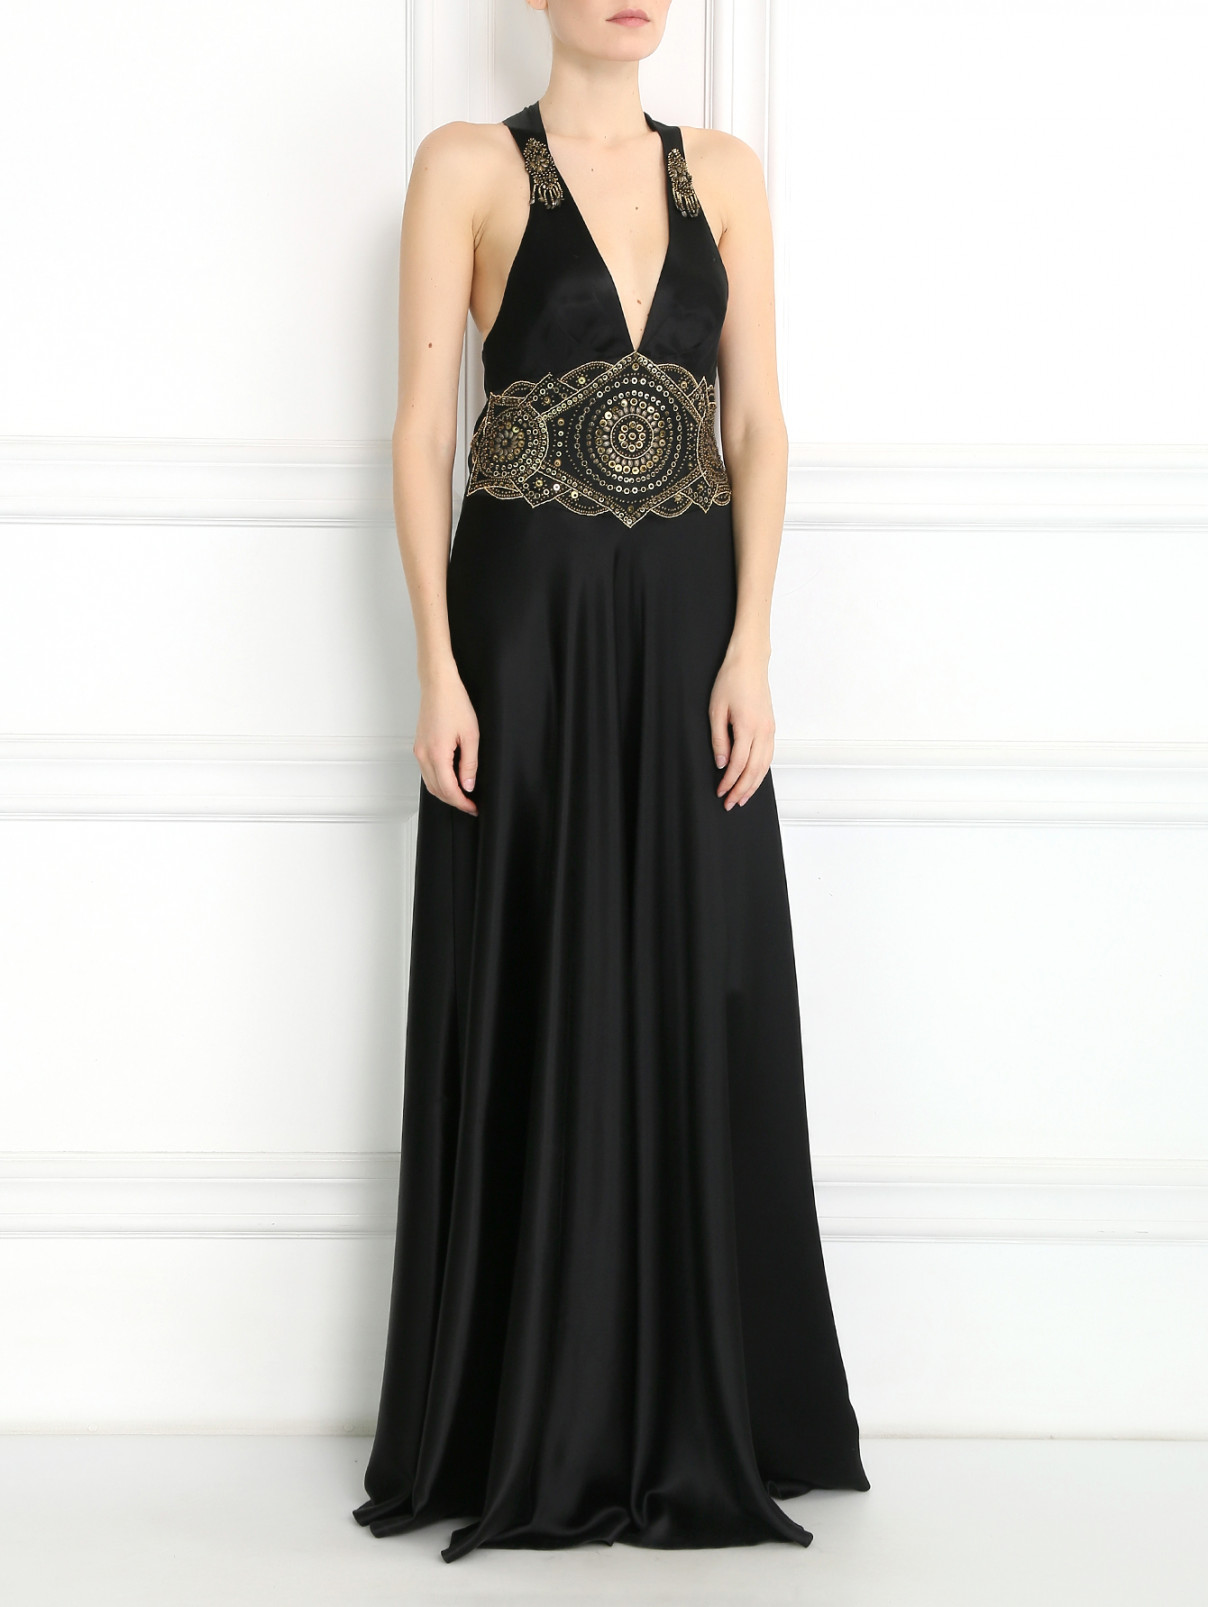 Платье из шелка декорированное бисером Jenny Packham  –  Модель Общий вид  – Цвет:  Черный